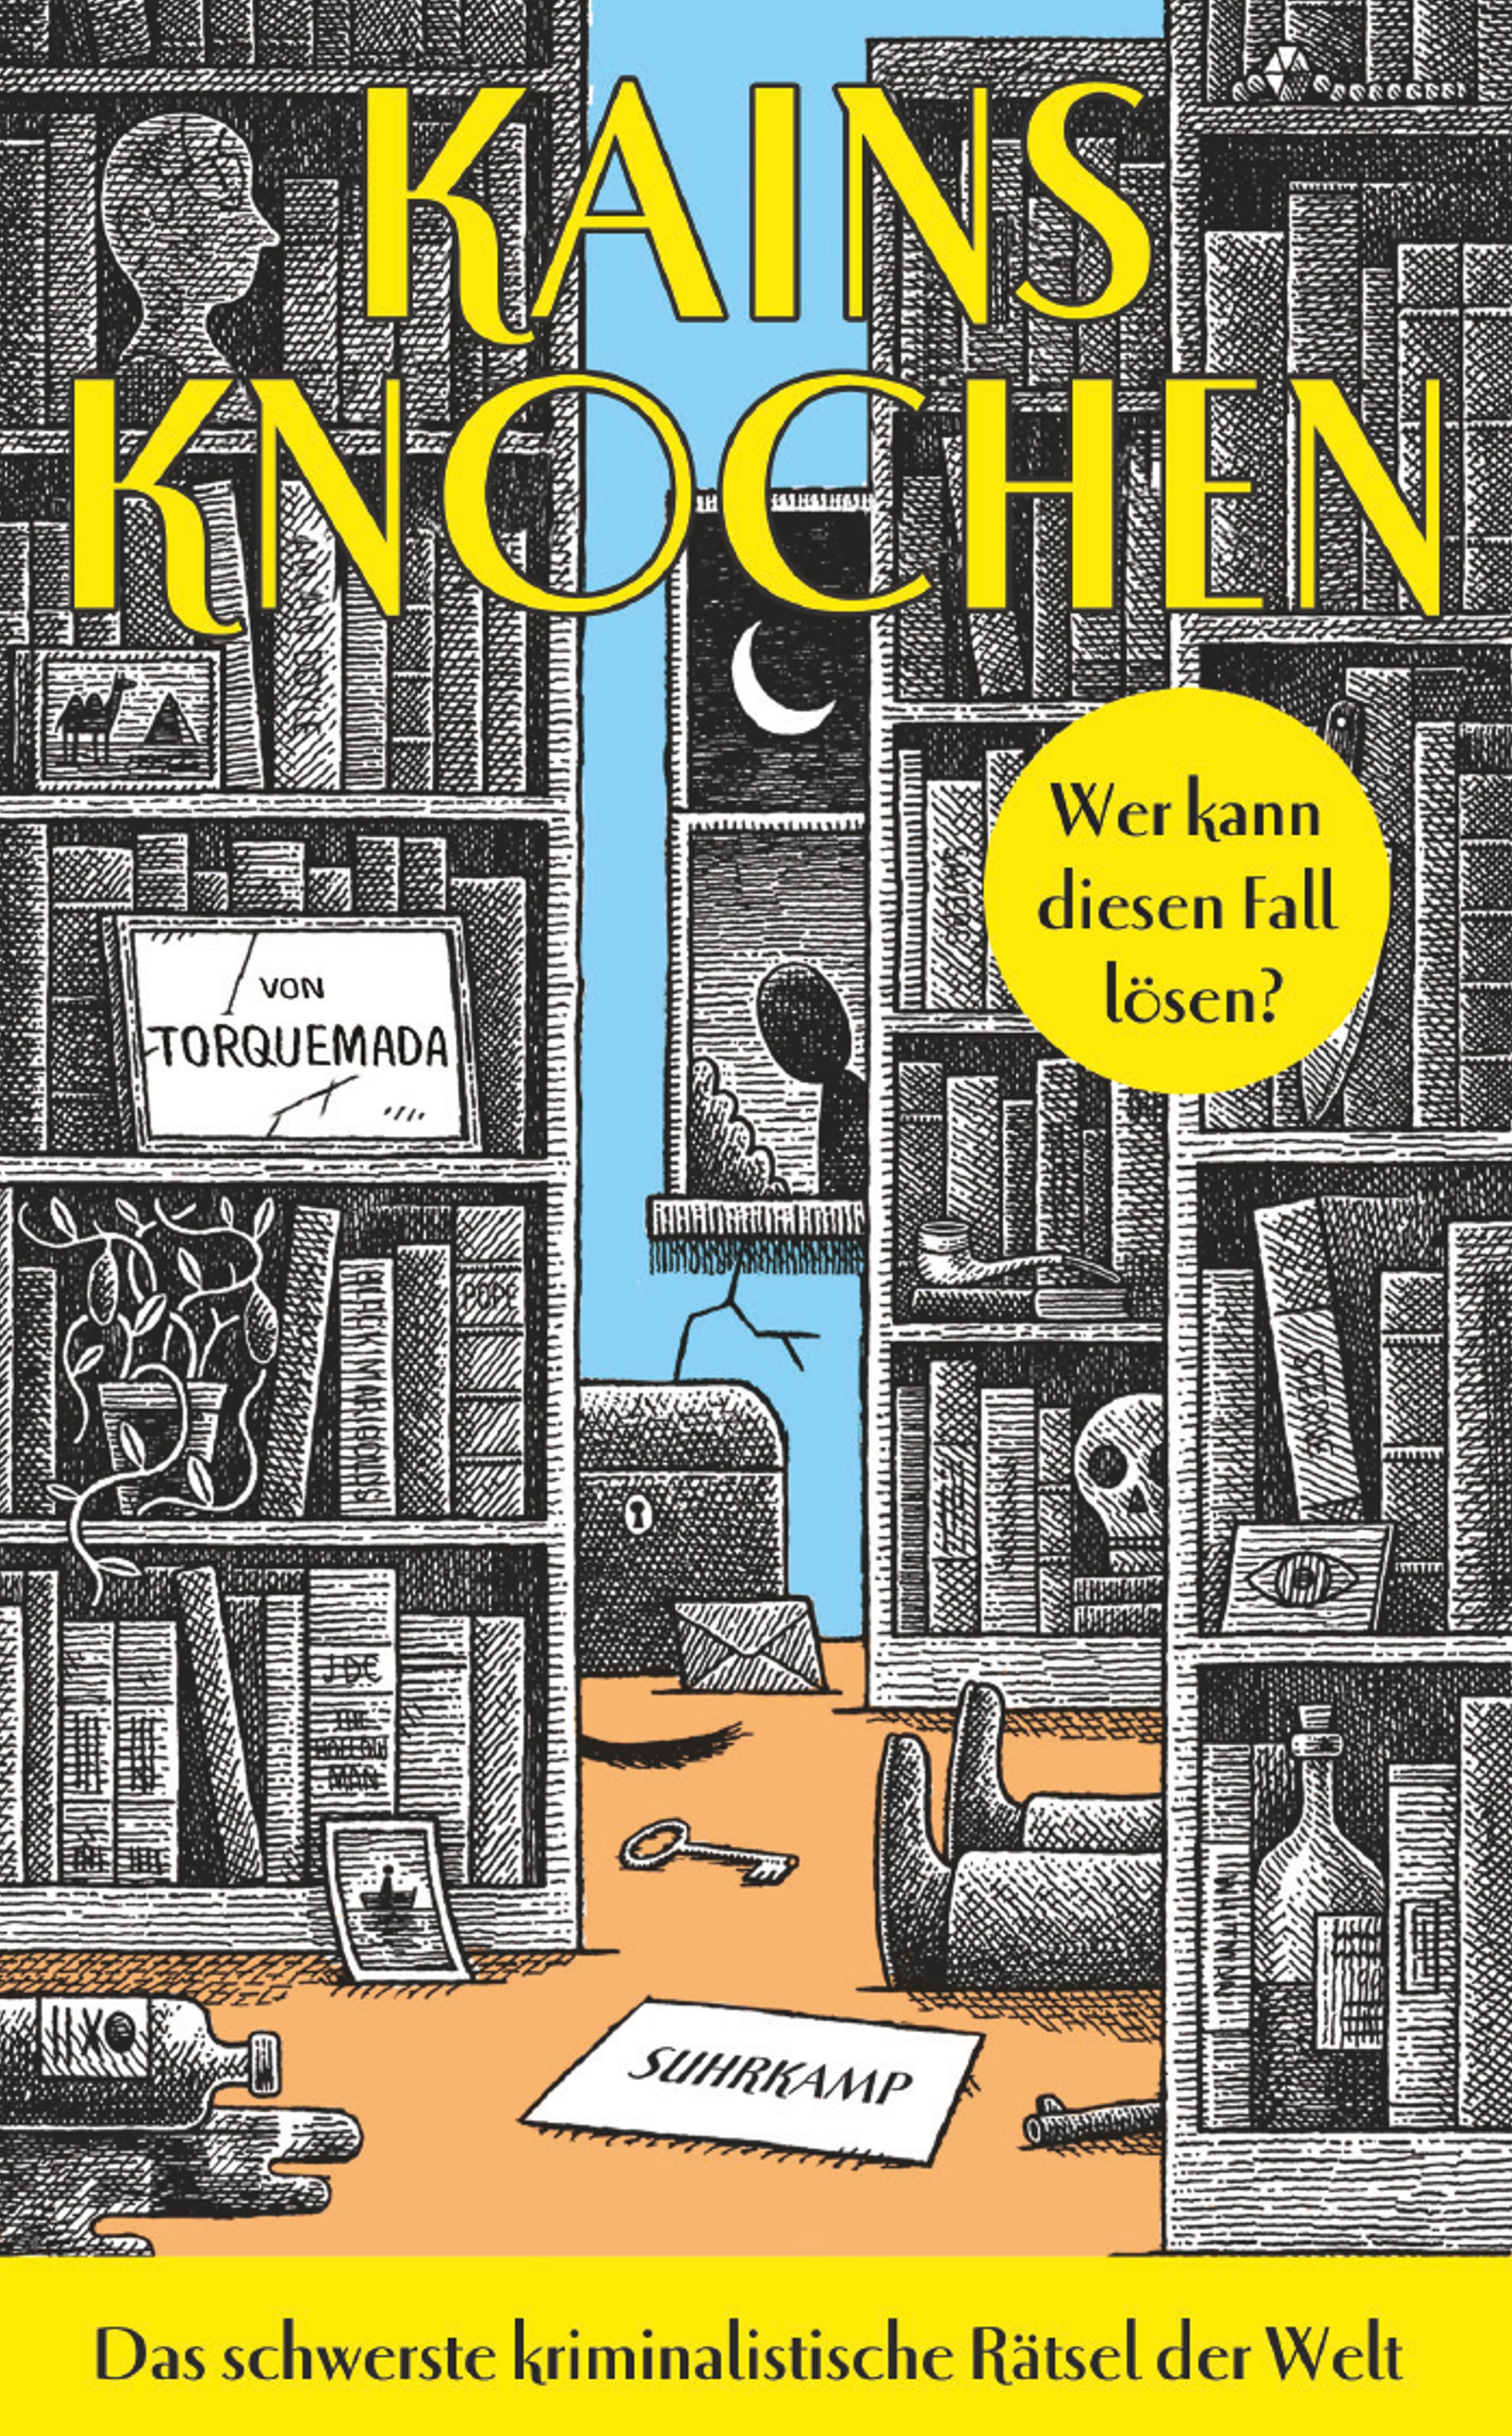 Kains Knochen. Buch von Torquemada (Suhrkamp Verlag)